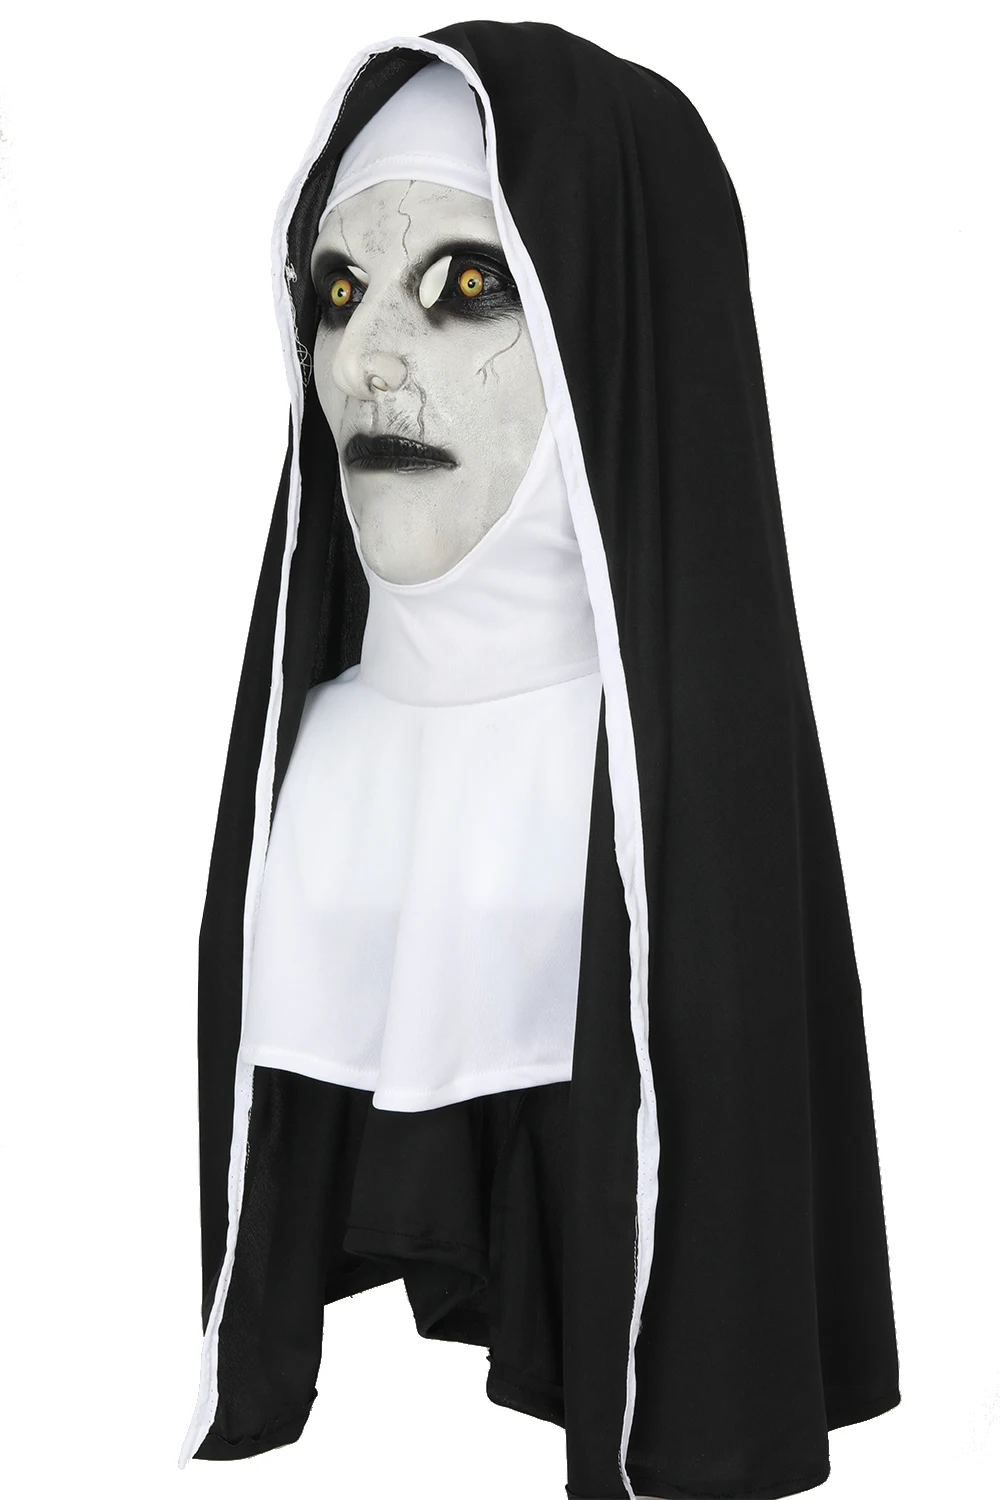 XCOSER монахиня Косплэй Valak монахиня маска Хэллоуин ужасная Маска латекс белый и черный маска на Хеллоуин для косплея костюм, реквизит для Для мужчин